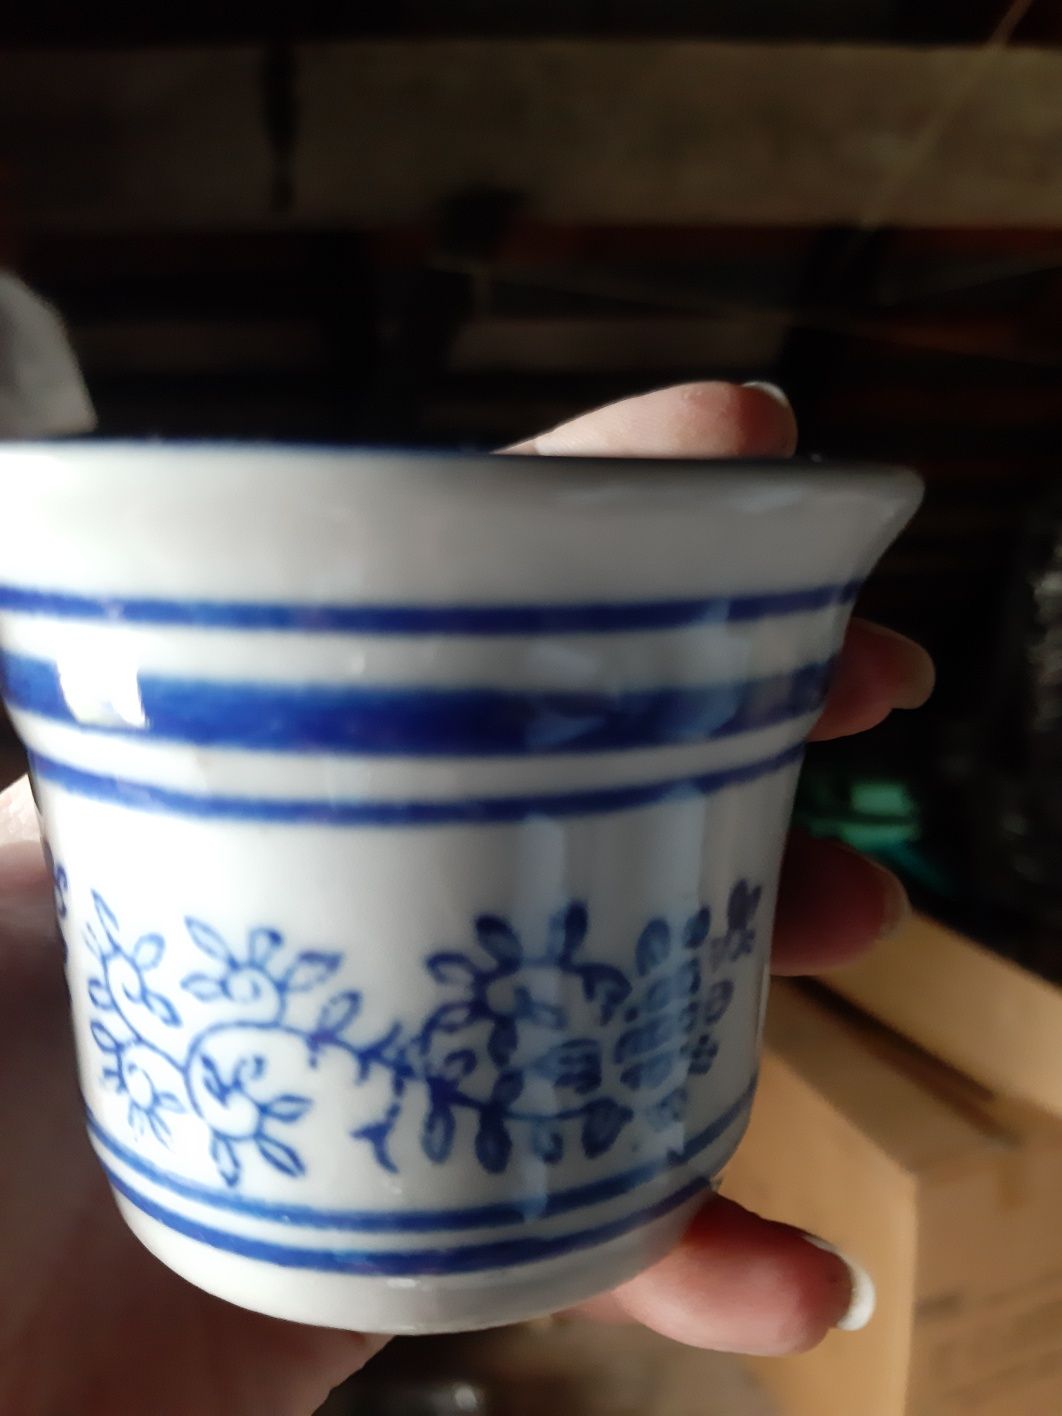 Naczynko ceramiczne